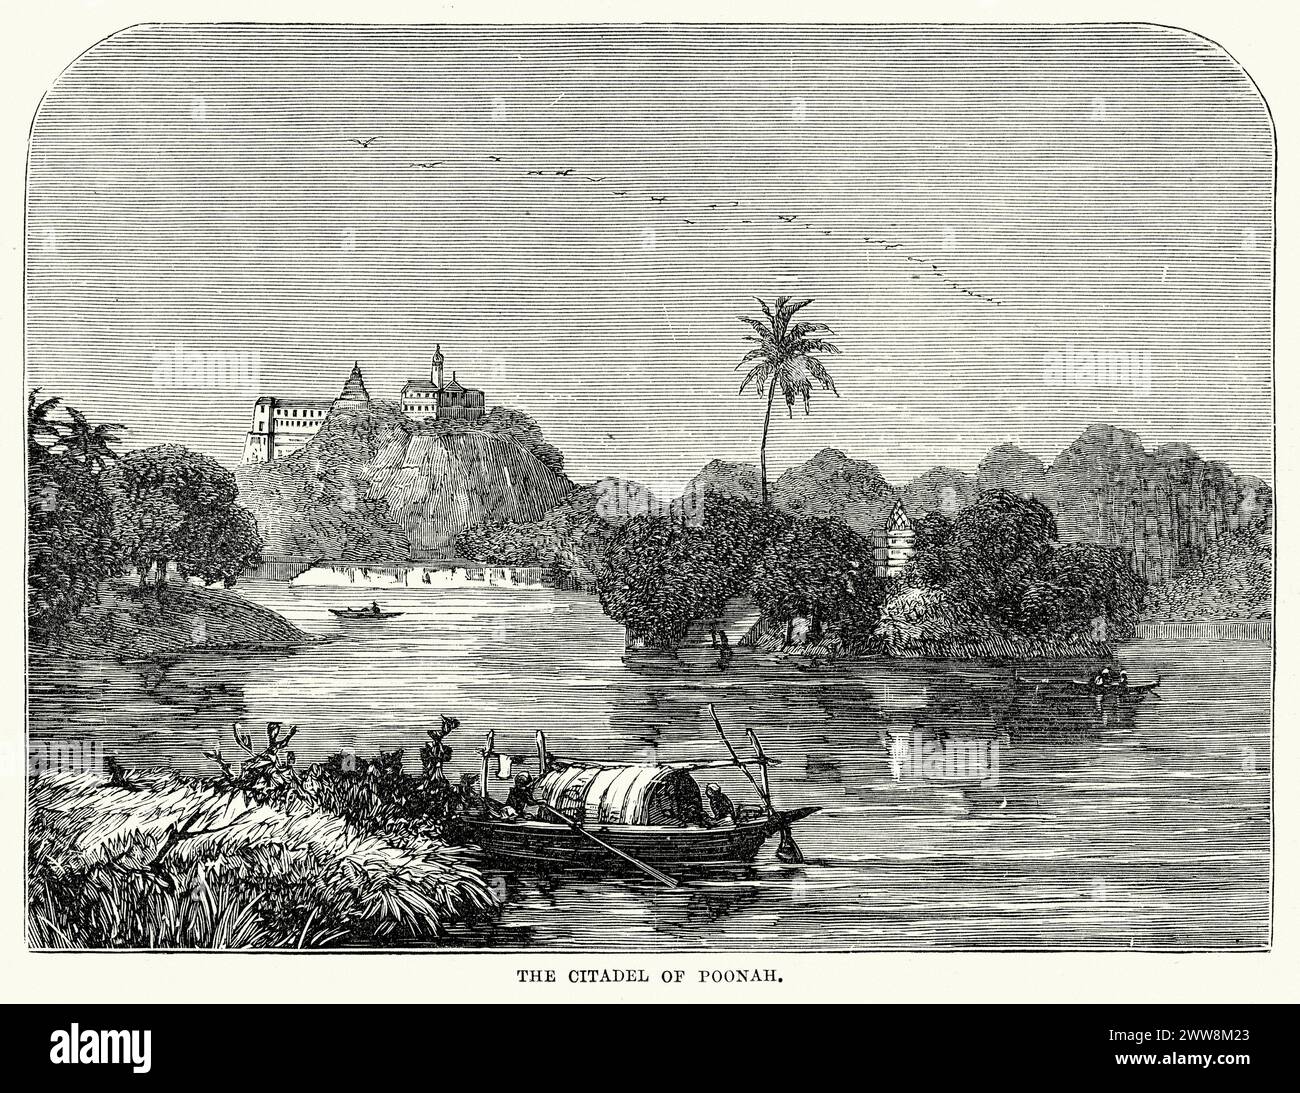 Vue de la Citadelle de Poonah (Pune), Maharashtra, Inde au XIXe siècle Banque D'Images